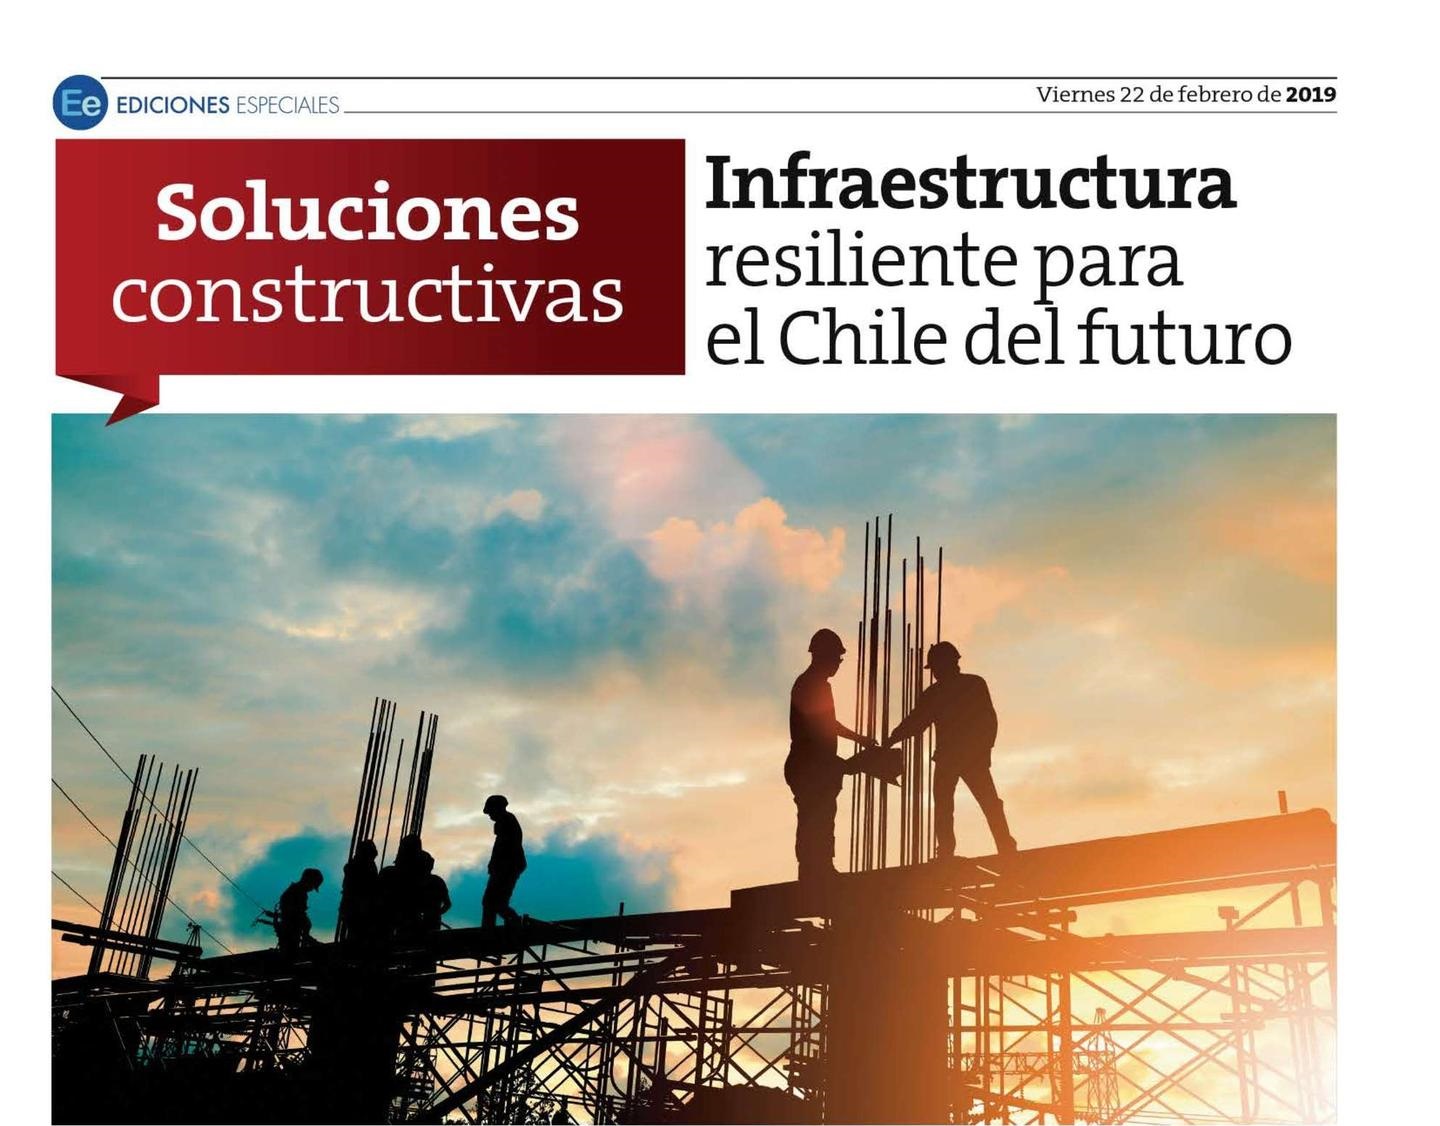 Construye2025 en Especial Soluciones Constructivas en Medios Regionales de El Mercurio